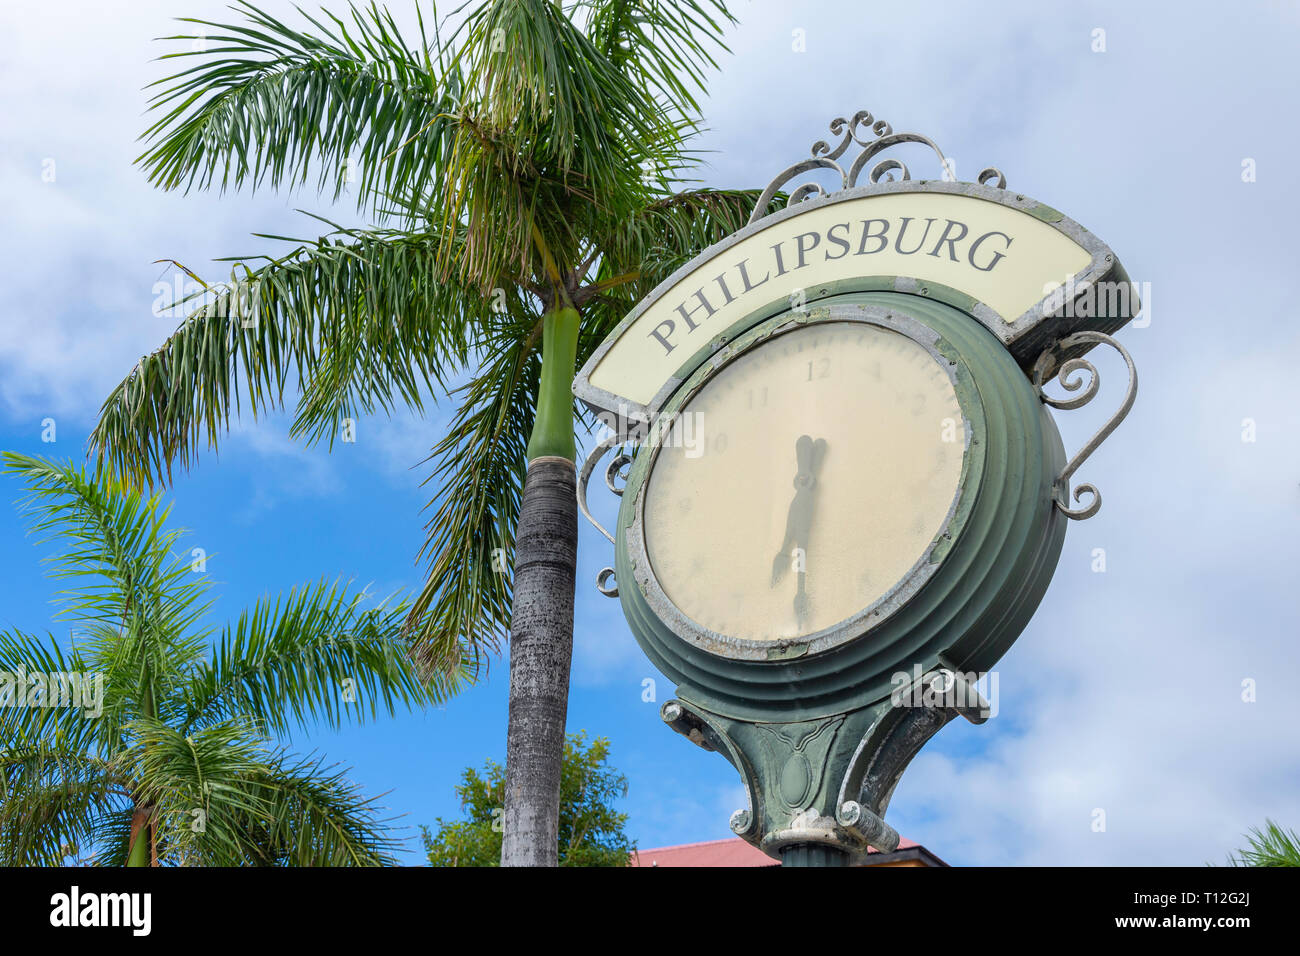 Town clock, Front Street, Philipsburg, Sint Maarten, Saint Martin, Lesser Antilles, Caribbean Stock Photo